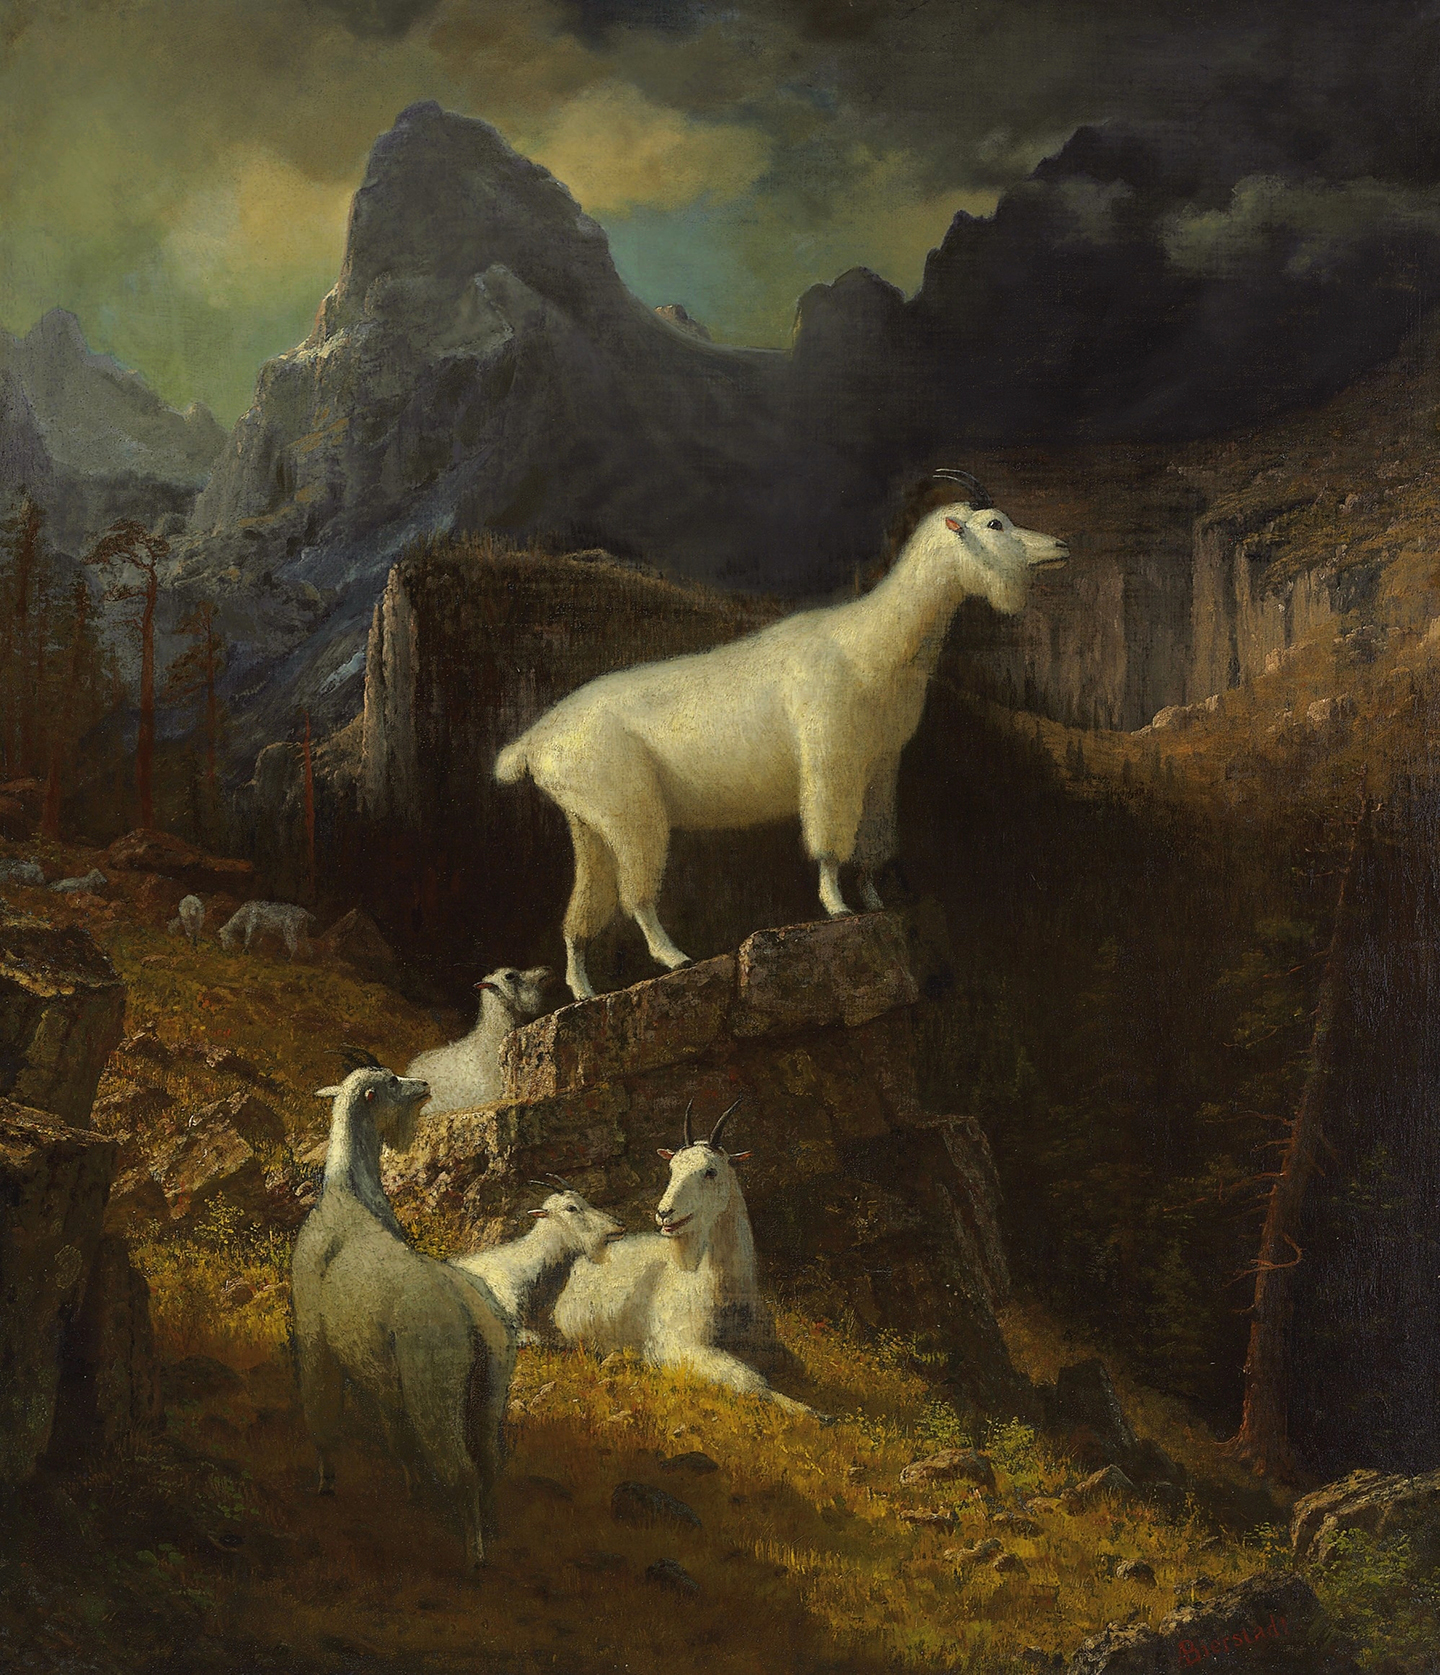 Bức tranh “Rocky Mountain Goats” (Dê Núi Rocky), khoảng năm 1885, của họa sỹ Albert Bierstadt. Sơn dầu trên vải canvas; 50 1/4 inch x 43 1/4 inch (128cm x 110cm). Bộ sưu tập tư nhân. (Ảnh: Tư liệu công cộng)